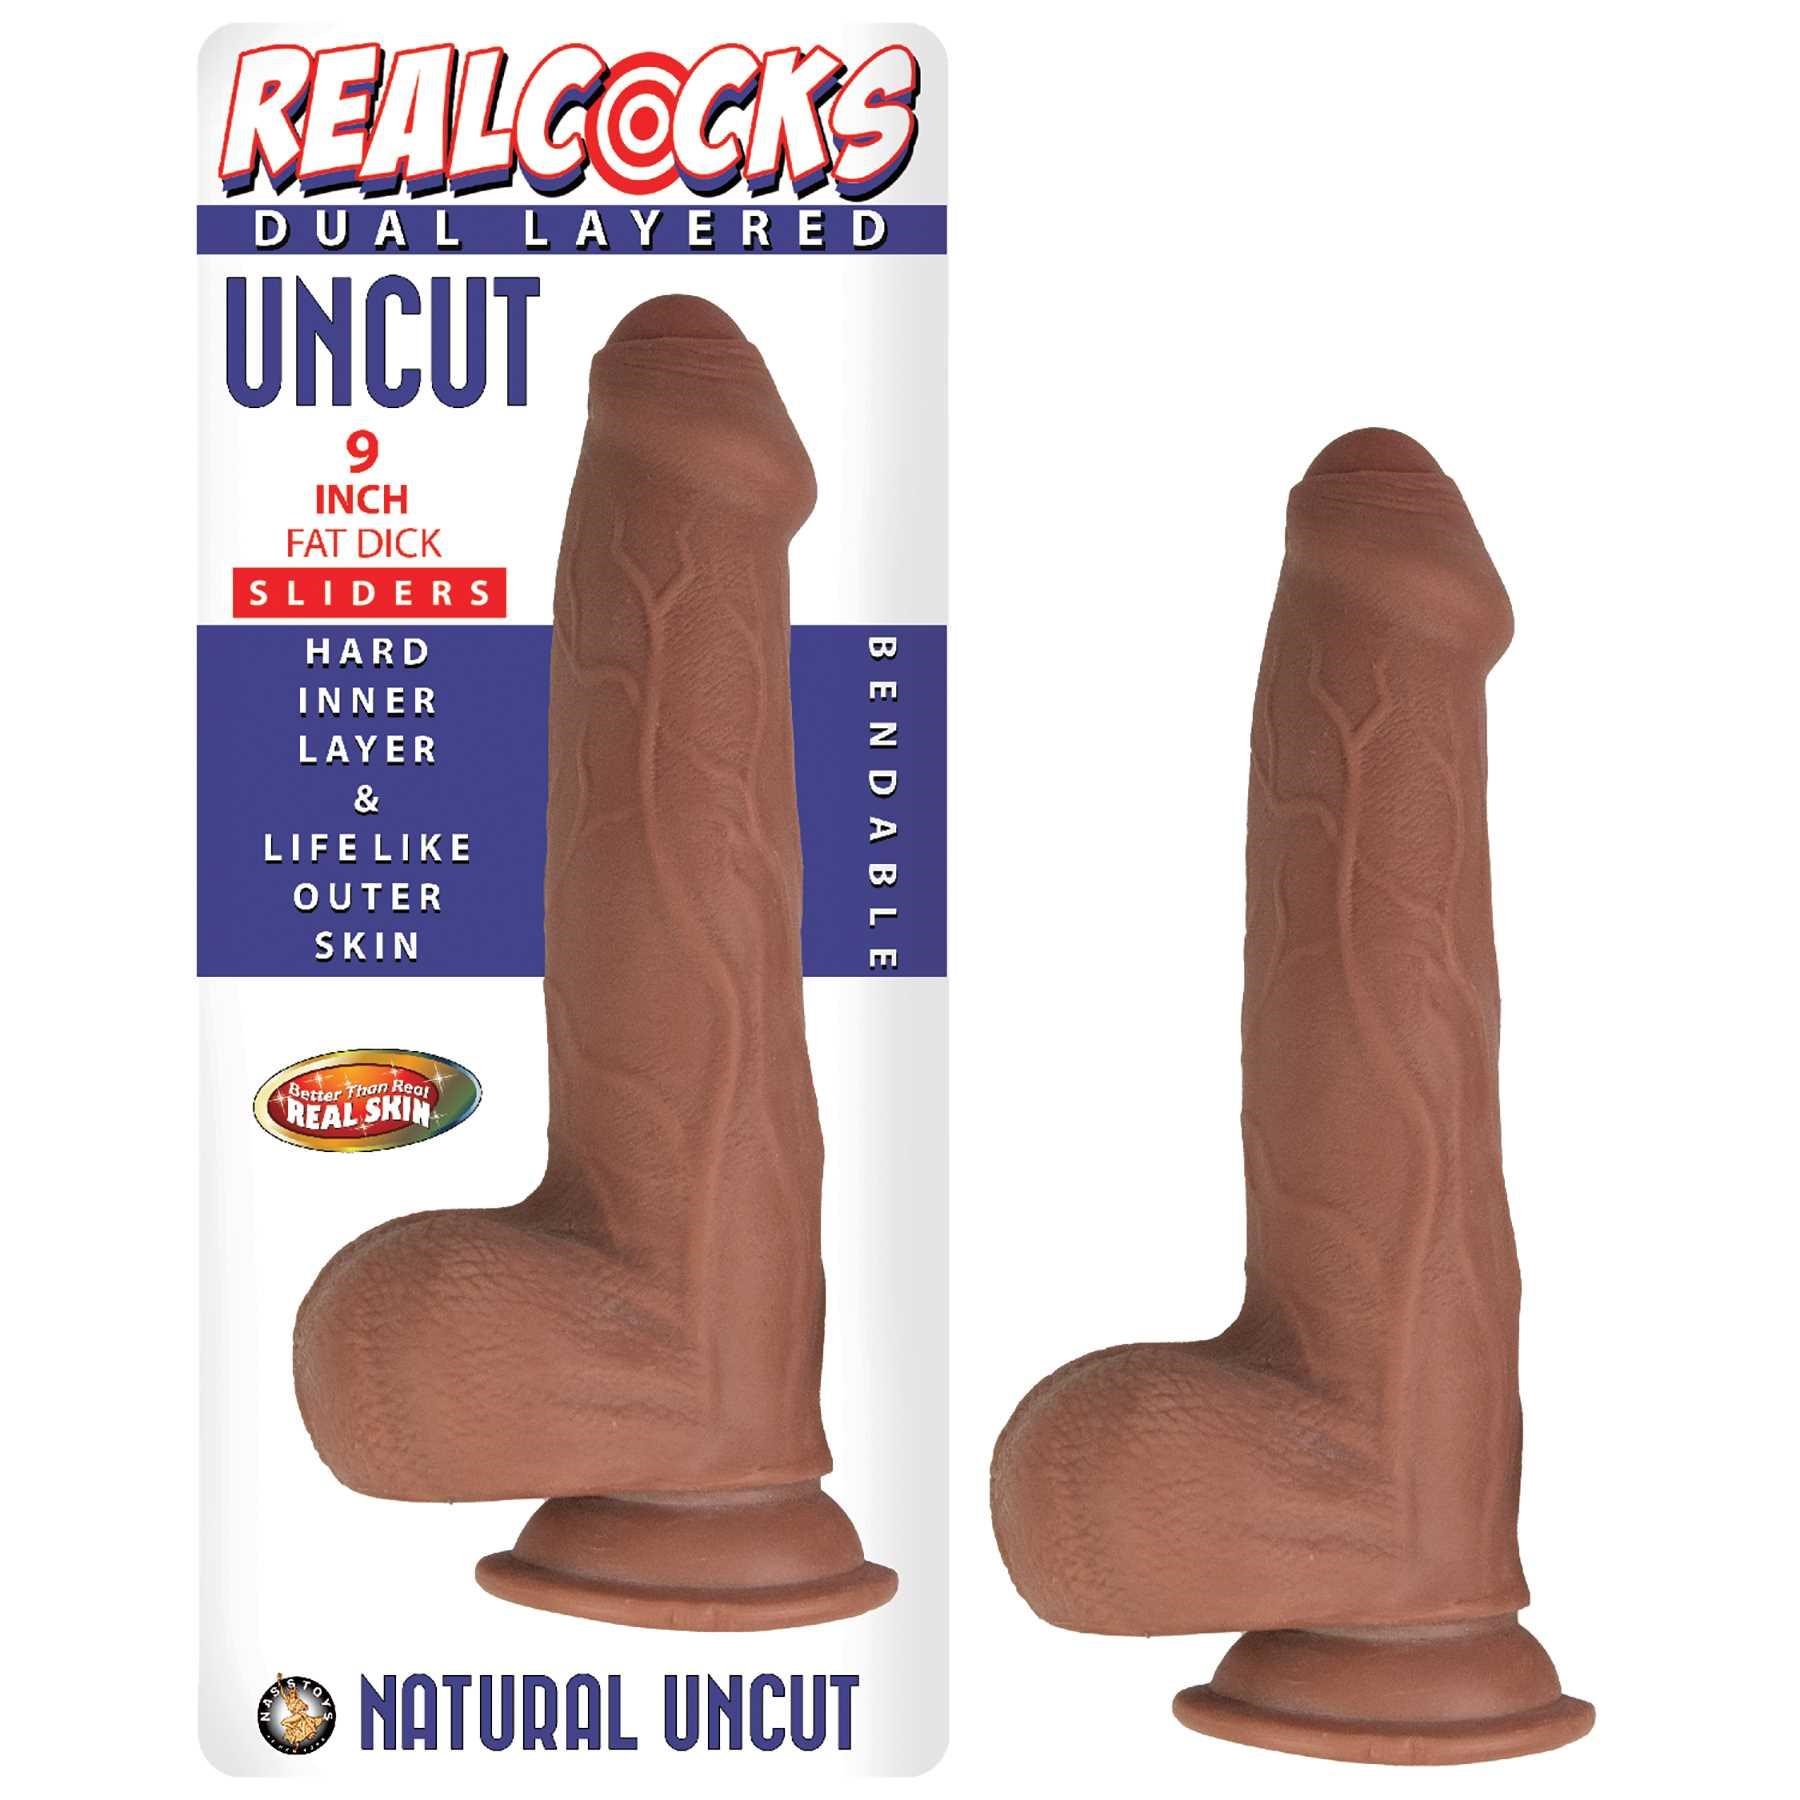 Realcocks 9 Inch Fat Dick Dual Layered Uncut Sliders Dildo